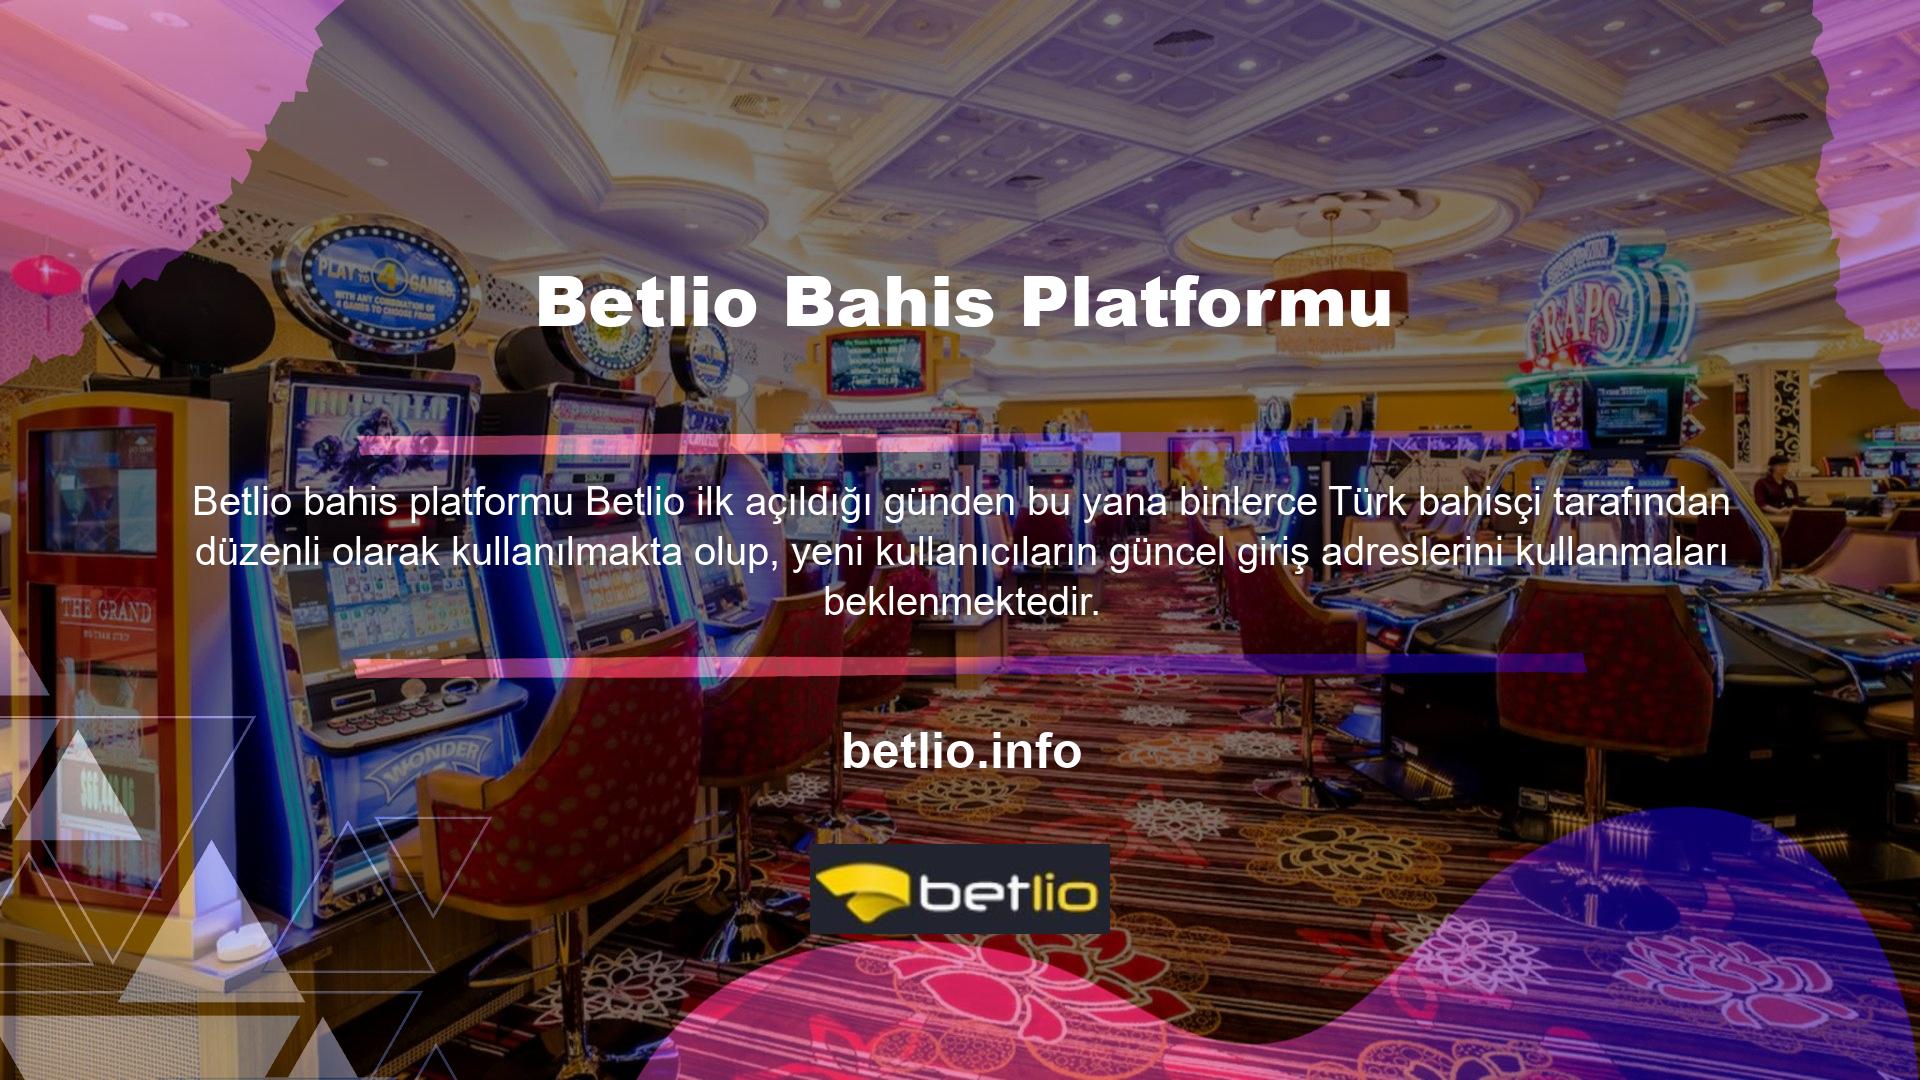 Zengin bahis seçenekleri ve yüksek oranlar, Türkiye bahis piyasasının önde gelen dijital bahis platformlarından biri olan Betlio güncel adresine ulaşmanızı sağlar